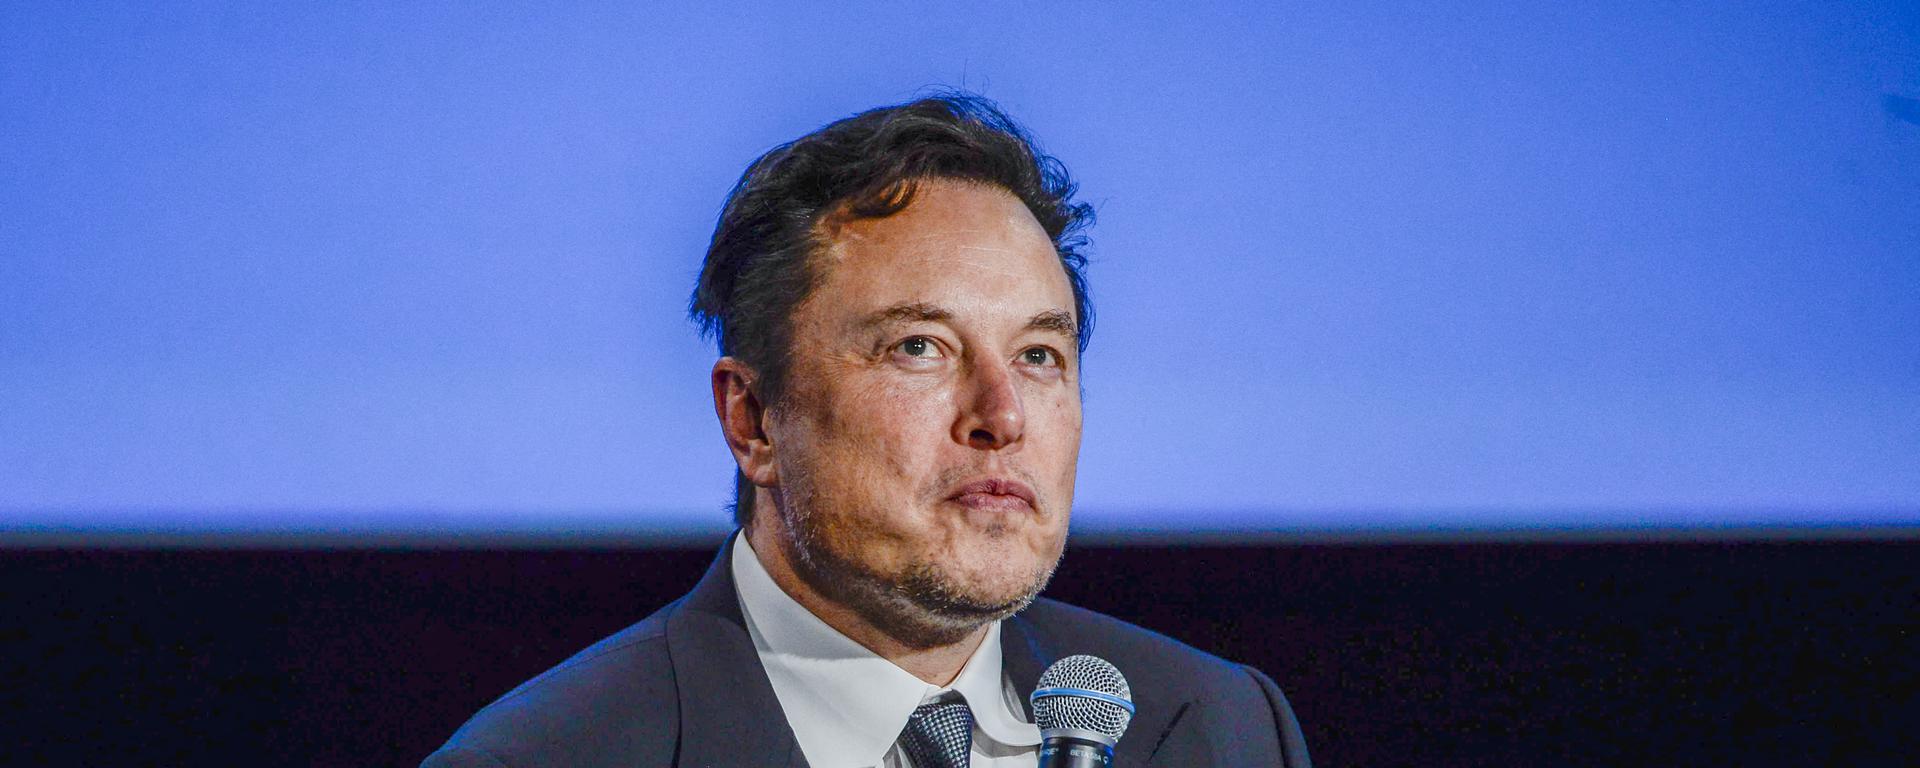 ¿Elon Musk seguirá siendo la cabeza de Twitter o se despide del cargo?